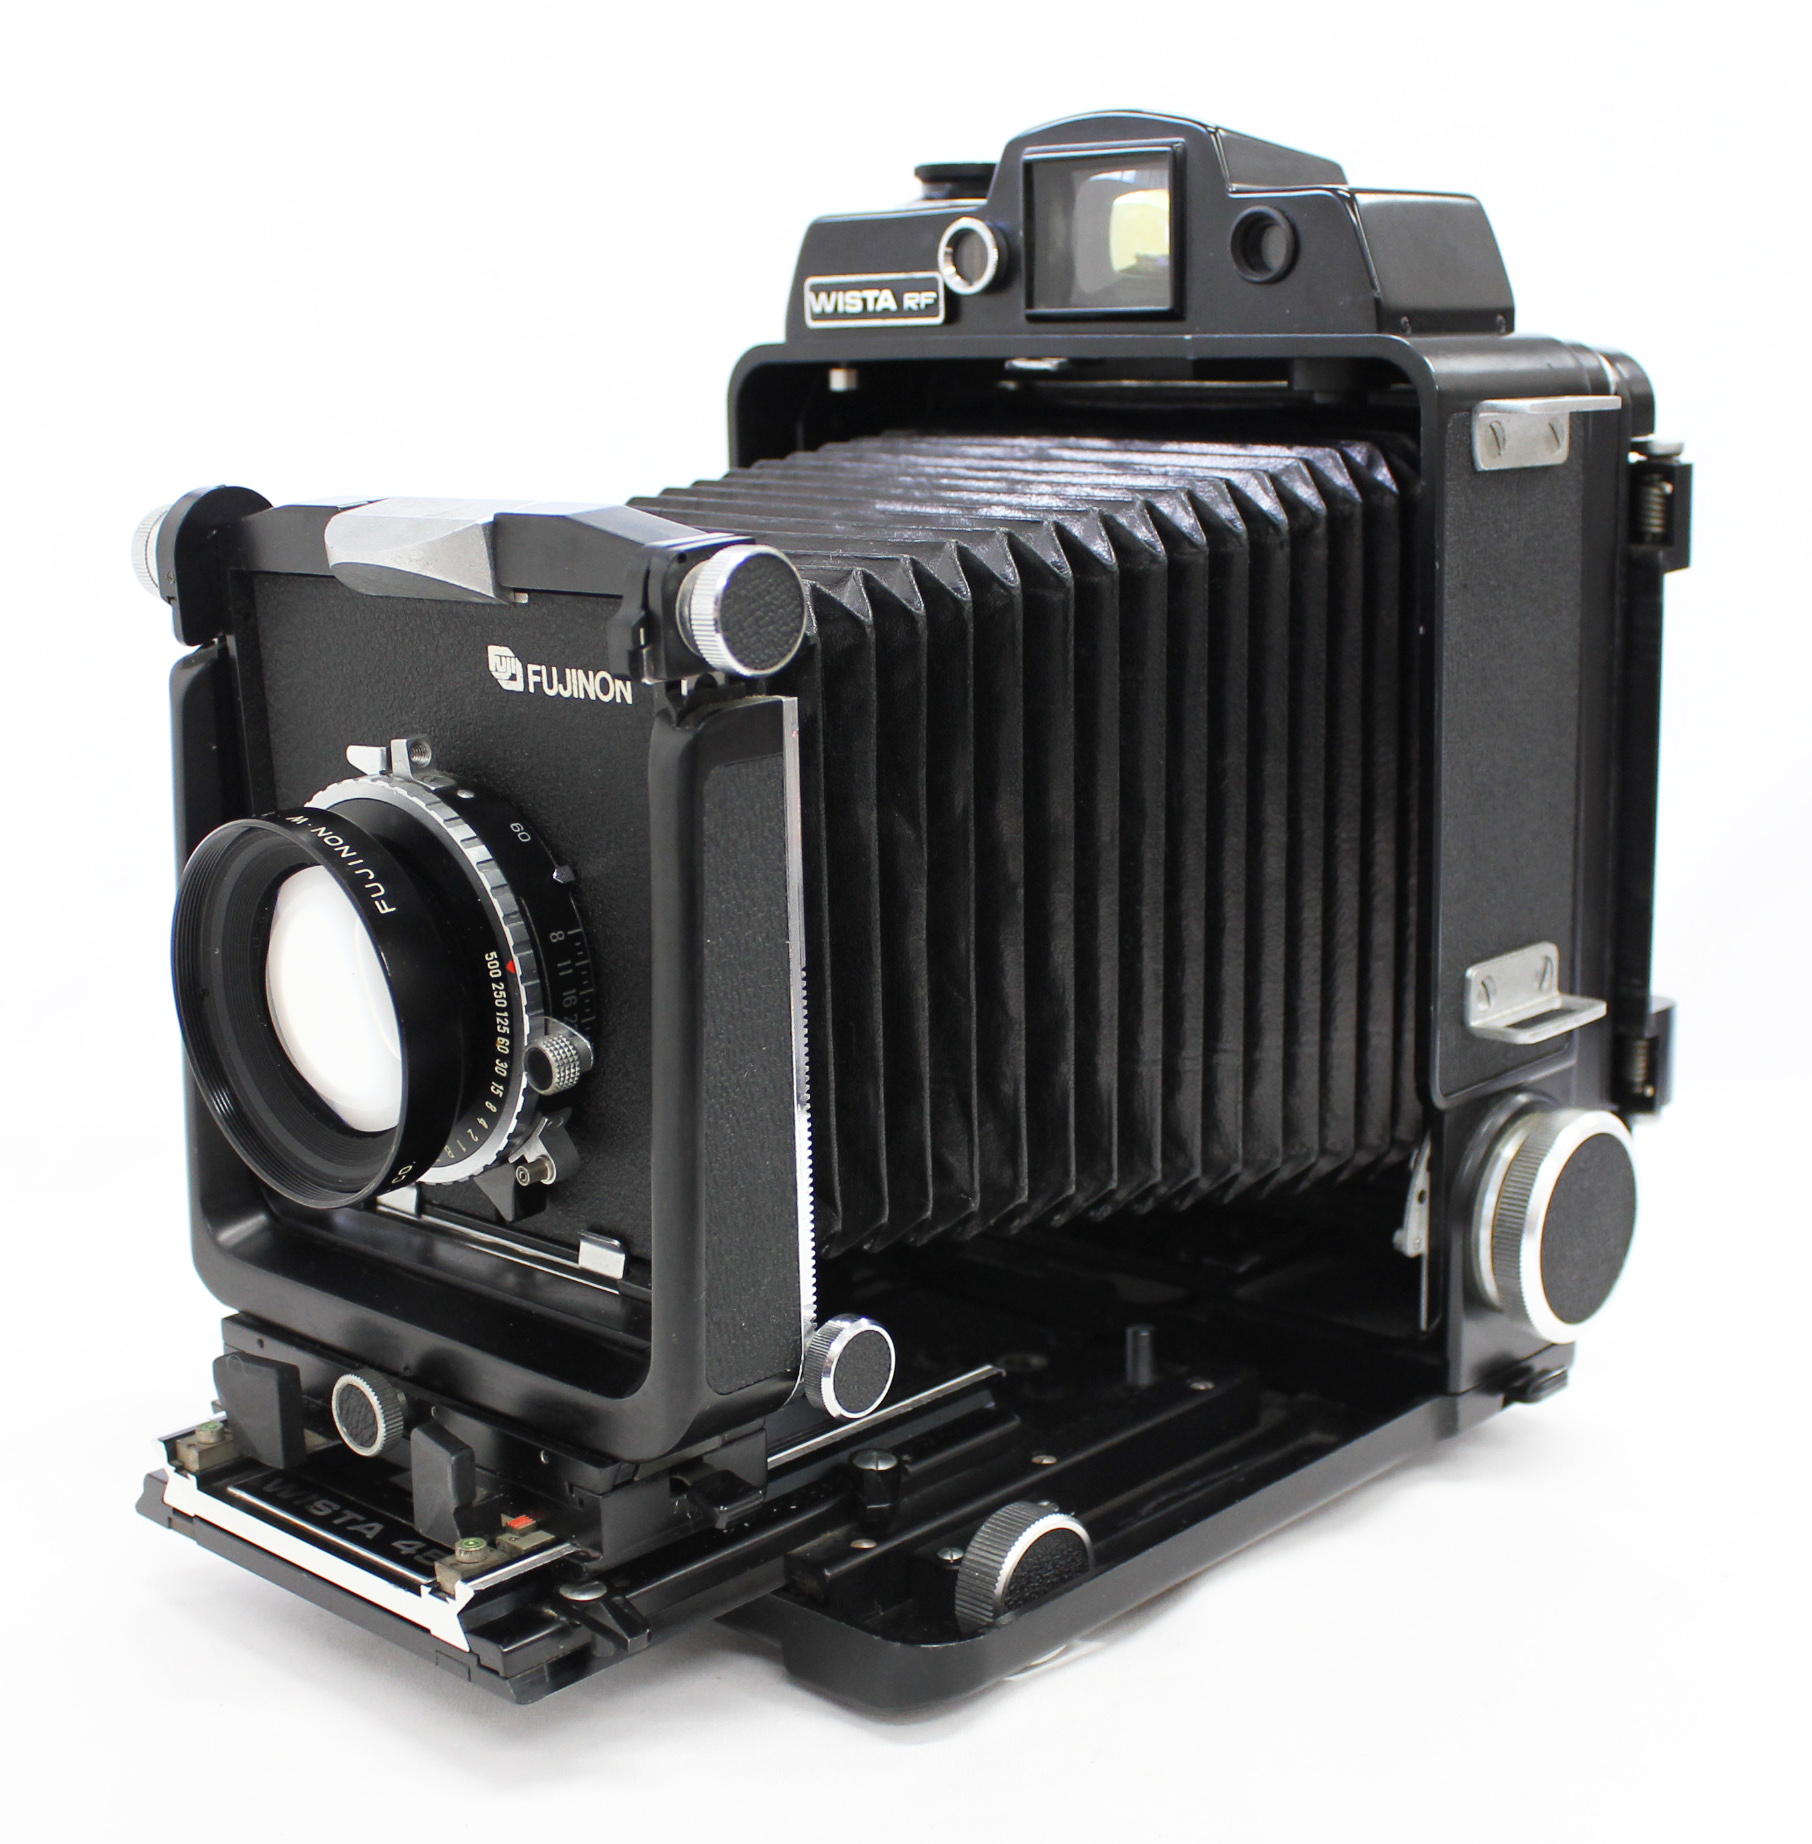 [Near Mint] Wista 45RF 4x5 Rangefinder Large Format Camera w/ Bonus Lens Fujinon W 150mm F/5.6 from Japan